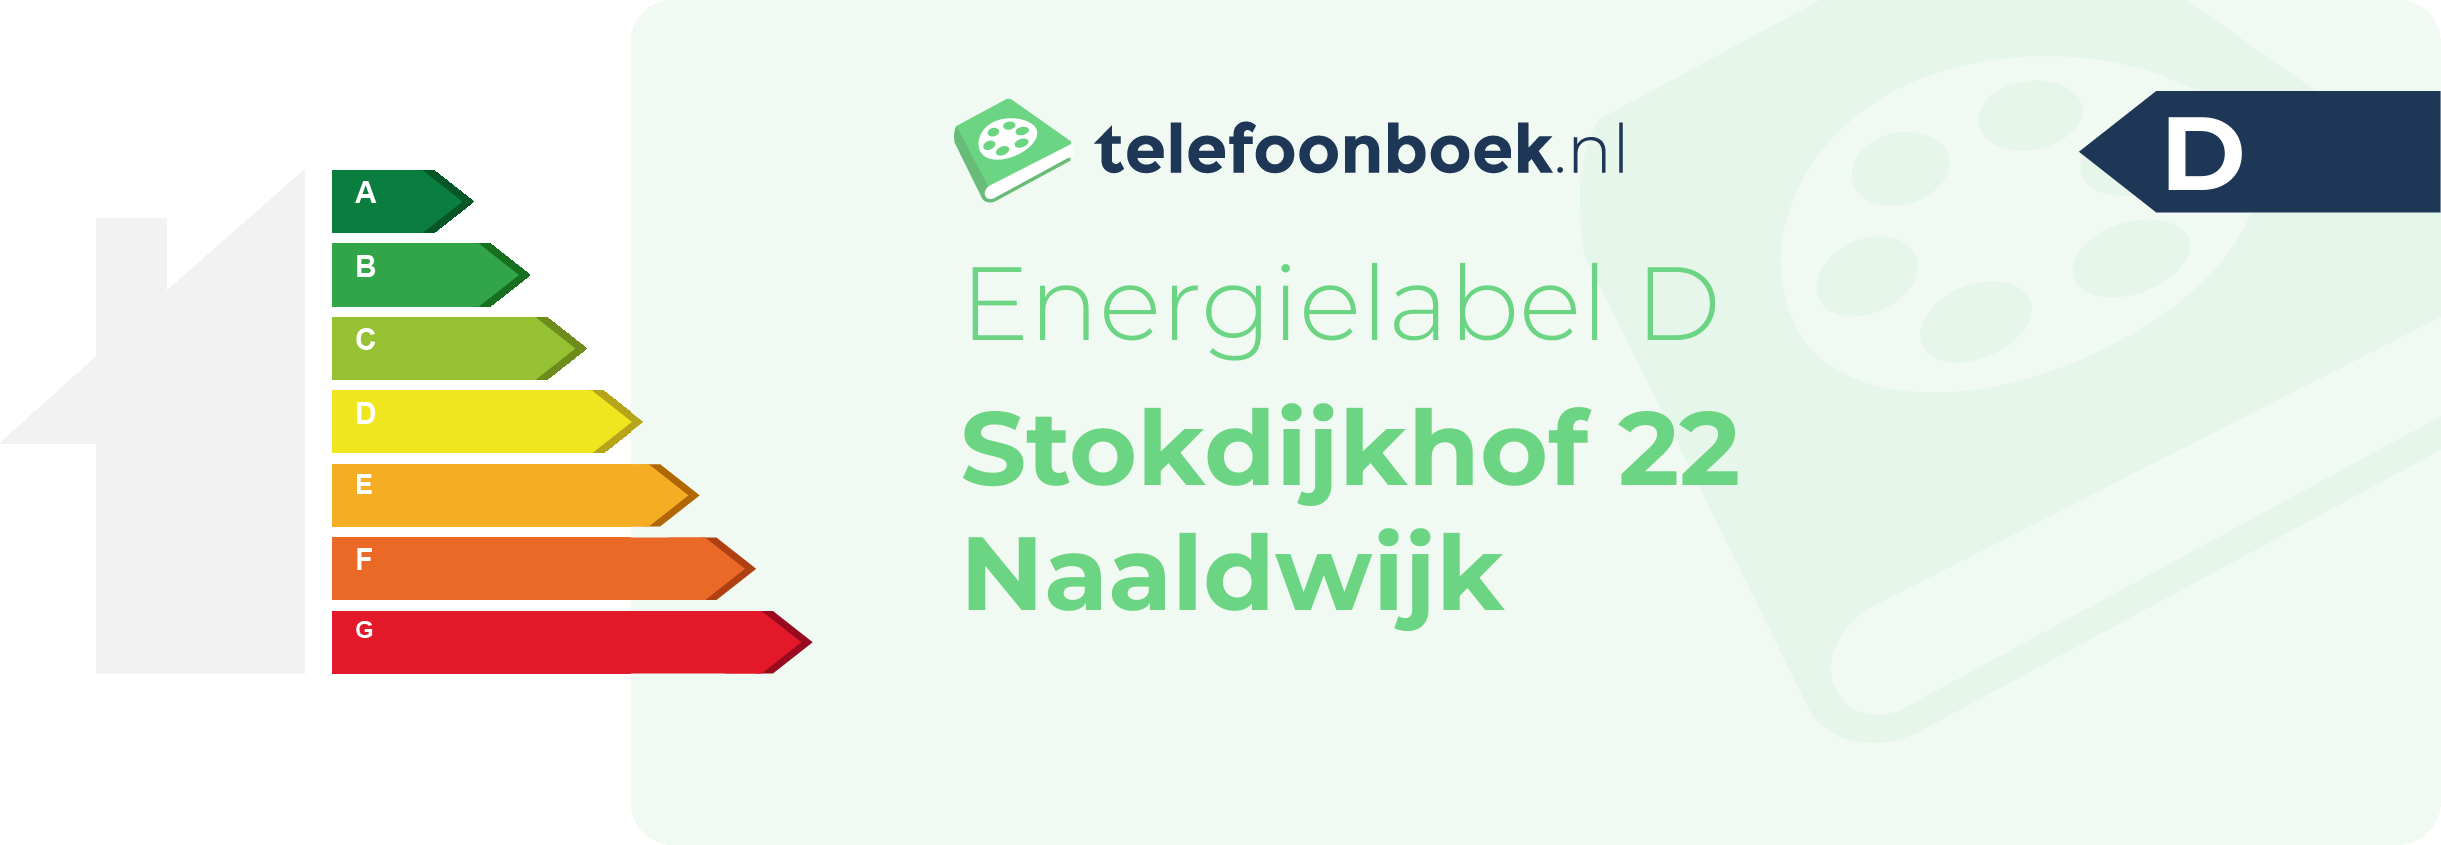 Energielabel Stokdijkhof 22 Naaldwijk